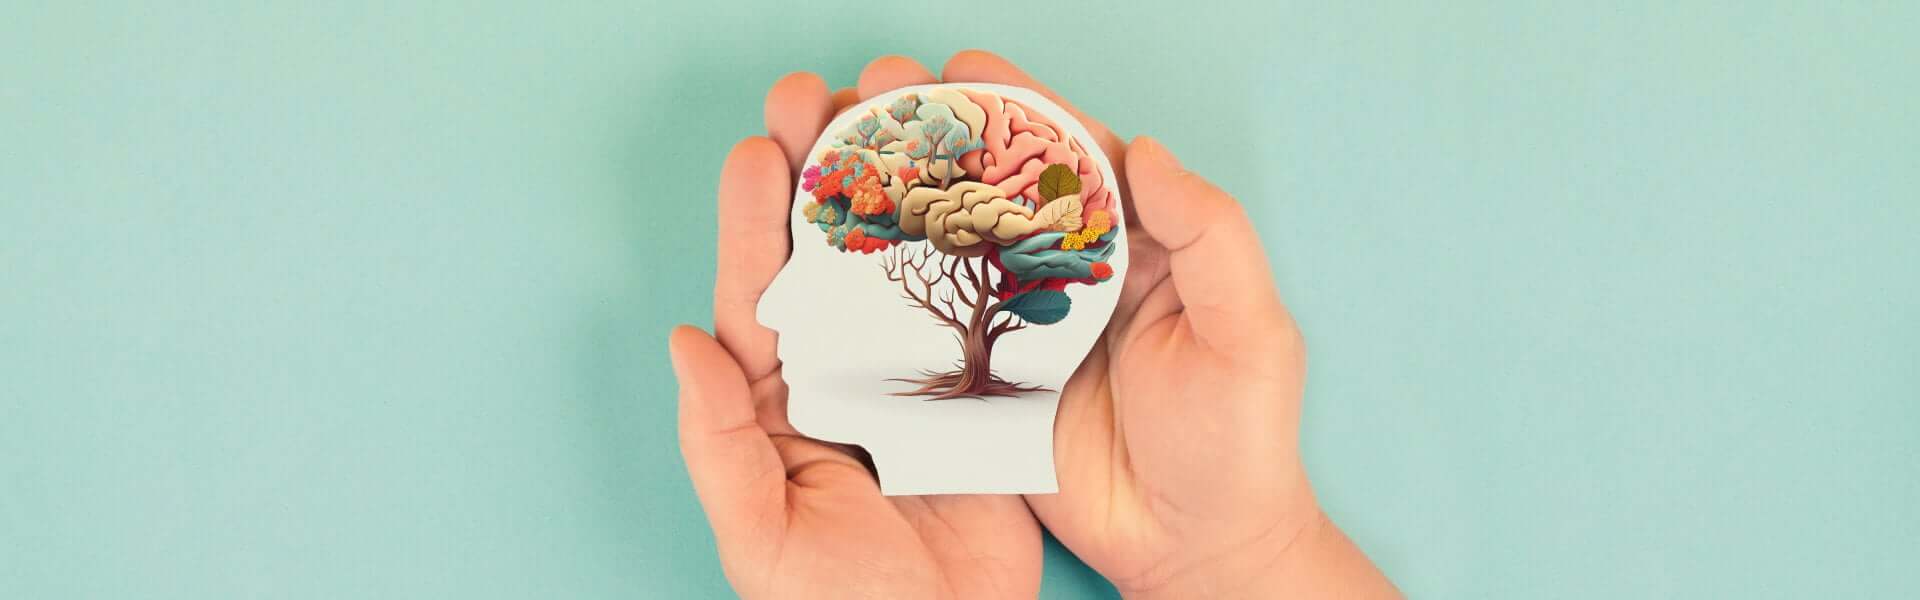 Slika prikazuje roke ki držijo sliko glave ki ima drevo kot možgani.